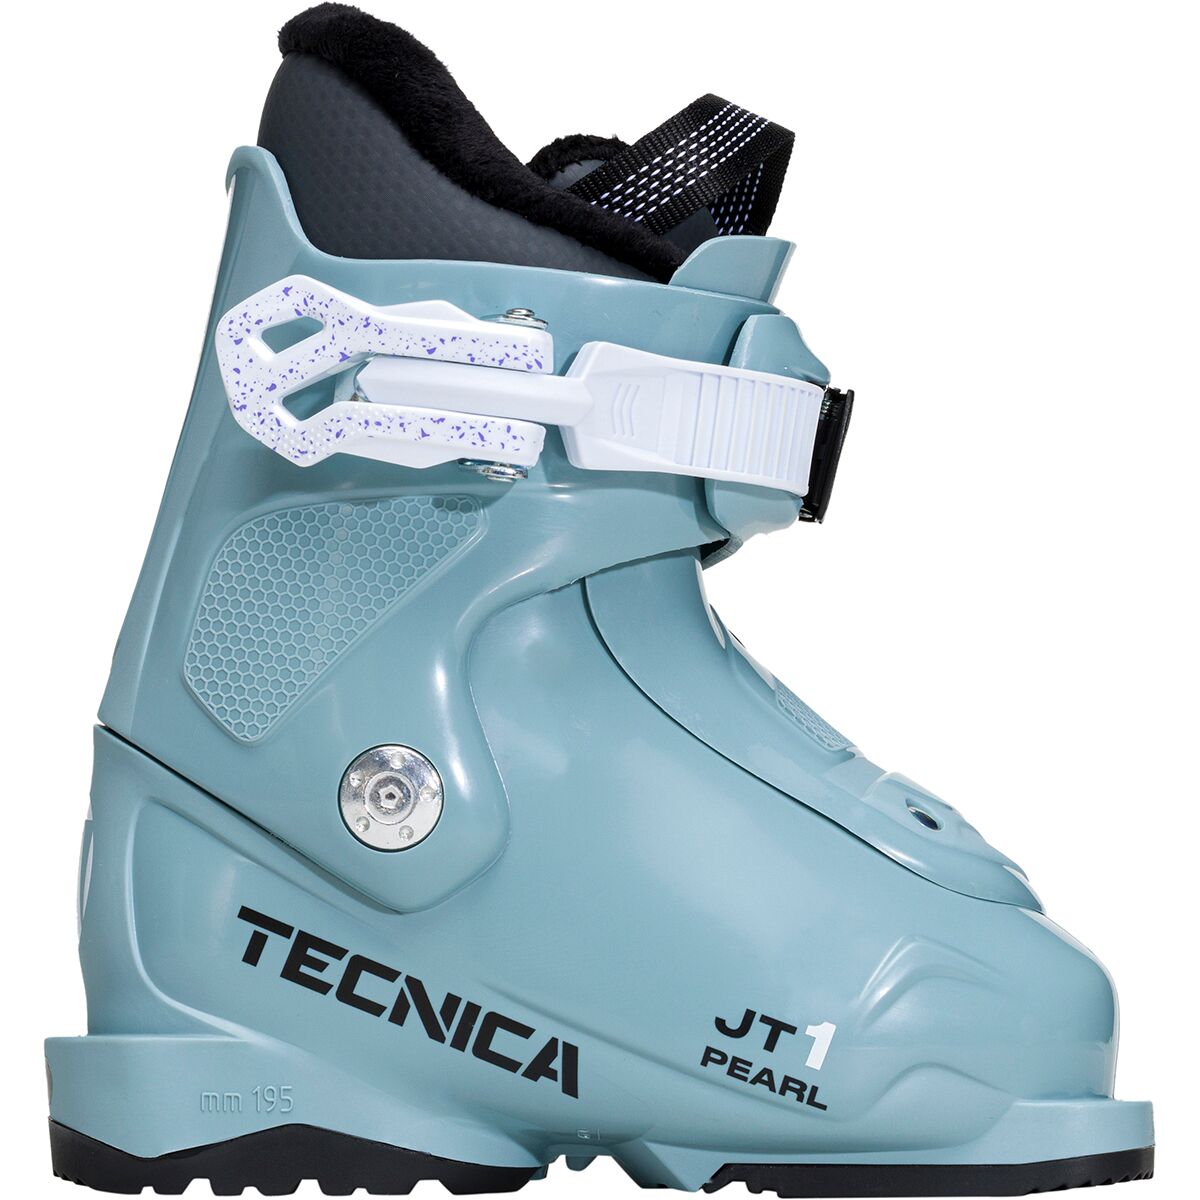 Tecnica Jt 1 Pearl Ski Boot - 2023 - Kids'